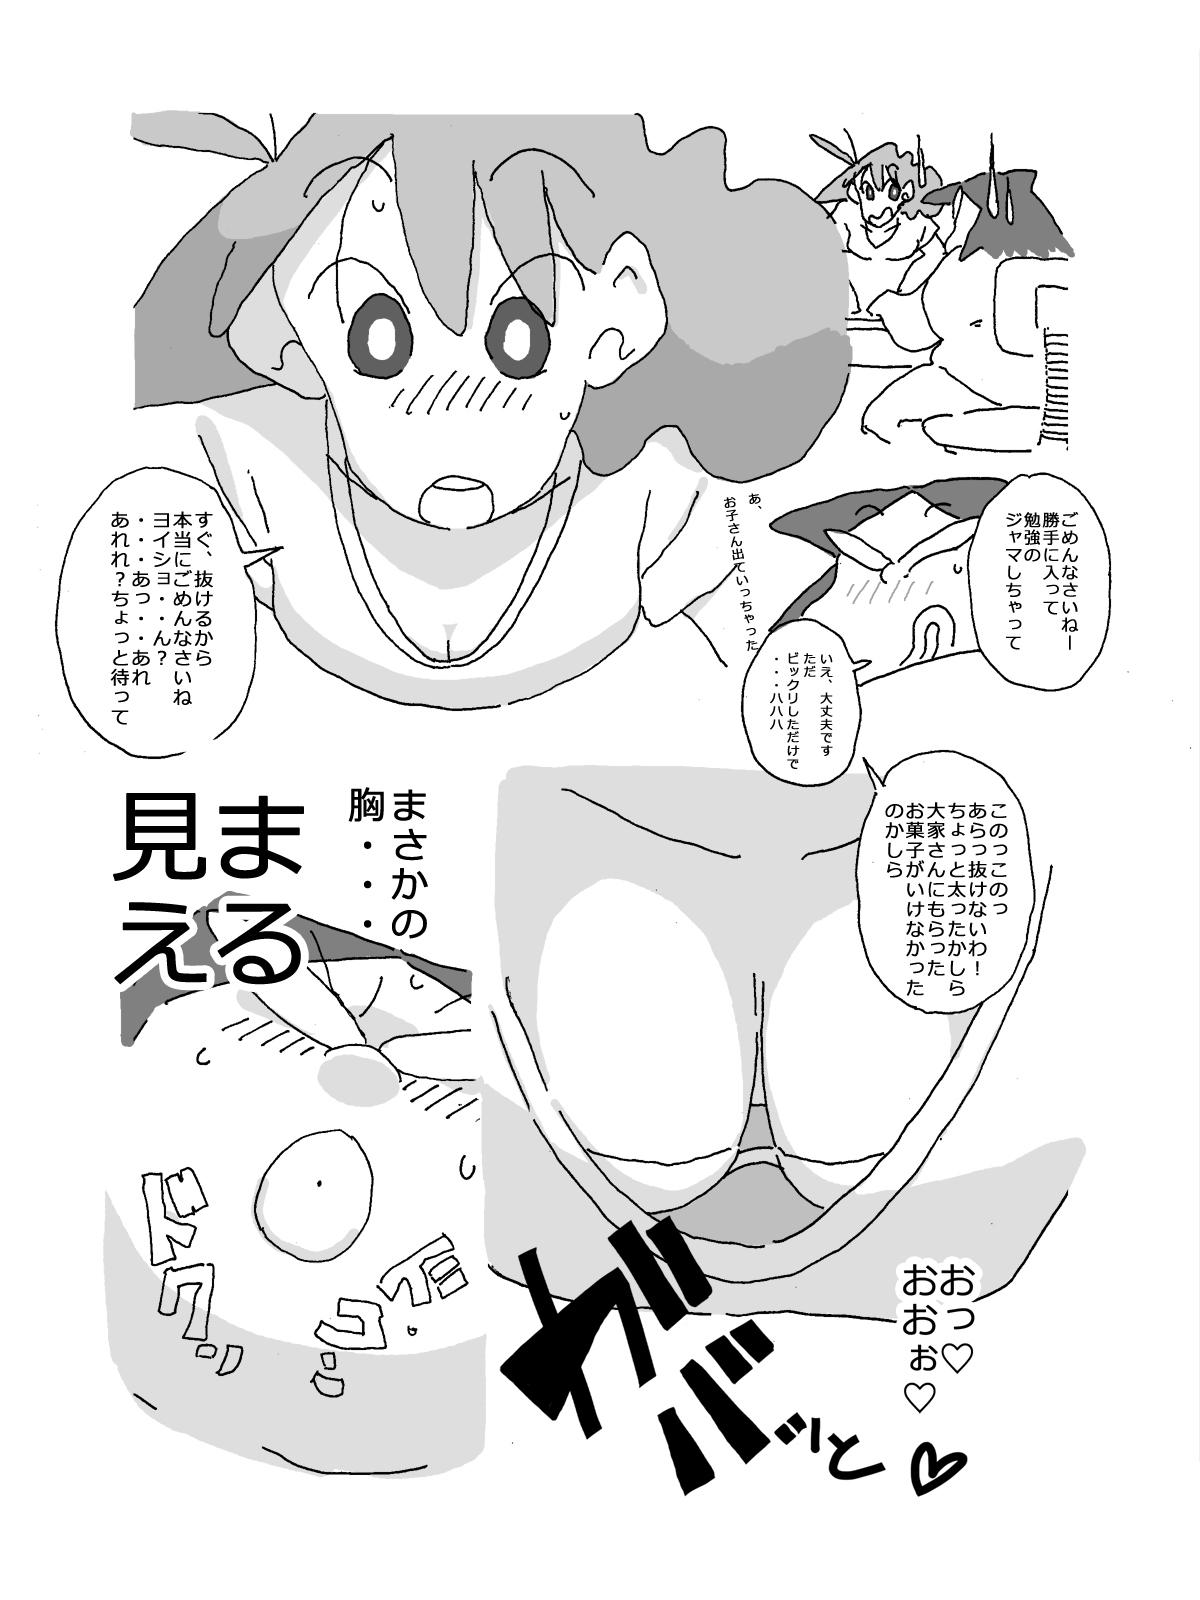 Vip Hitozuma ga Kou Nattetara Anata, Doushimasu? - Crayon shin-chan Webcamshow - Page 3